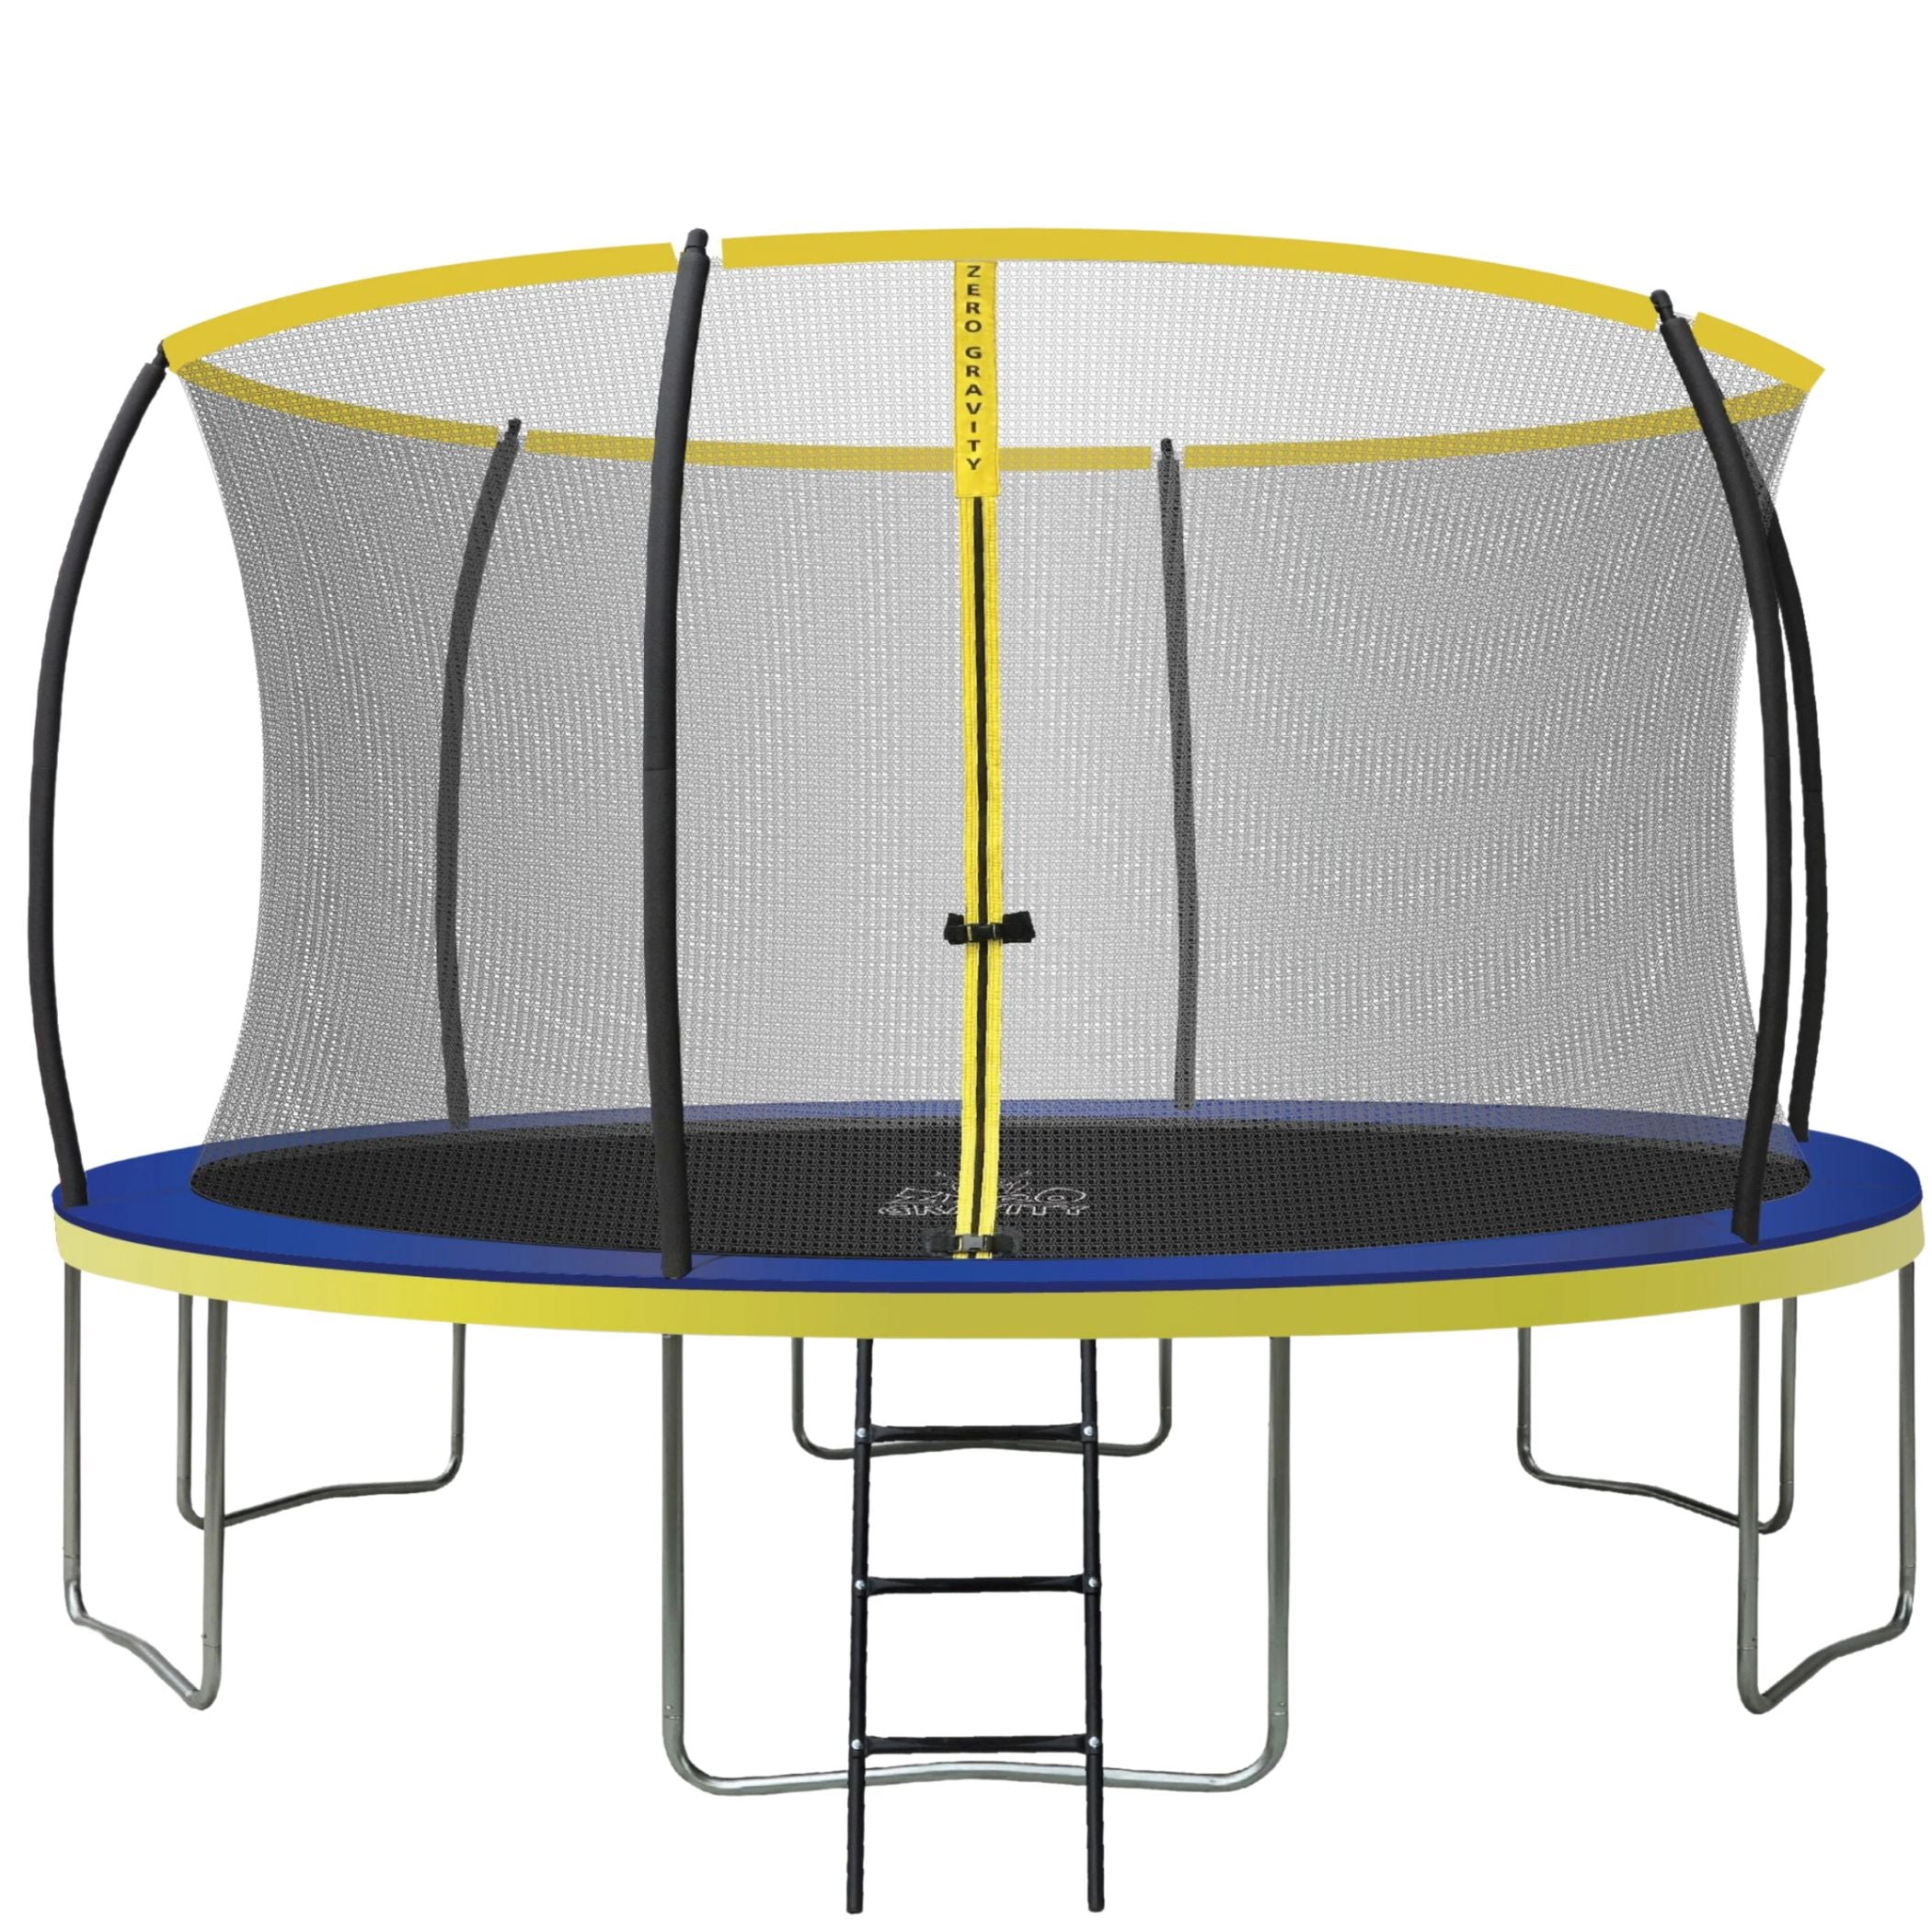 Trampolin (blau-gelb) Ø427cm inkl. Leiter - Nutzer bis 150kg - Ideal für bis zu 4 Kinder